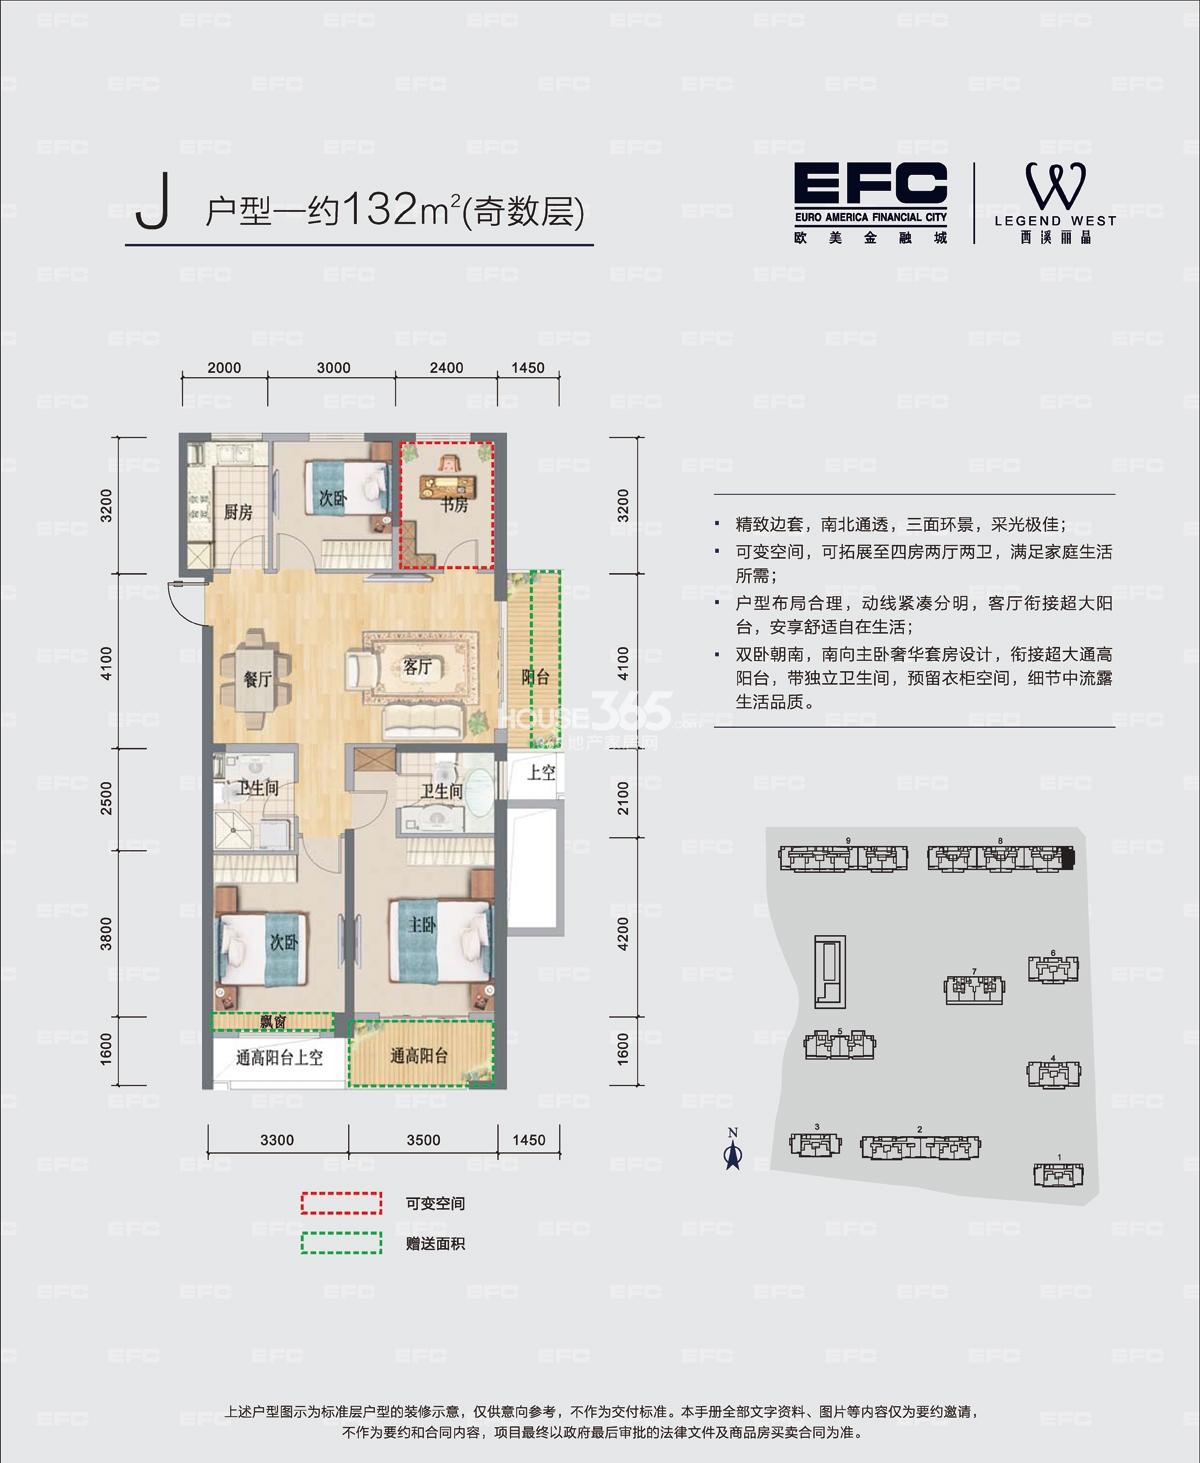 欧美金融城(EFC)8号楼边套J户型约132方(奇数层)户型图